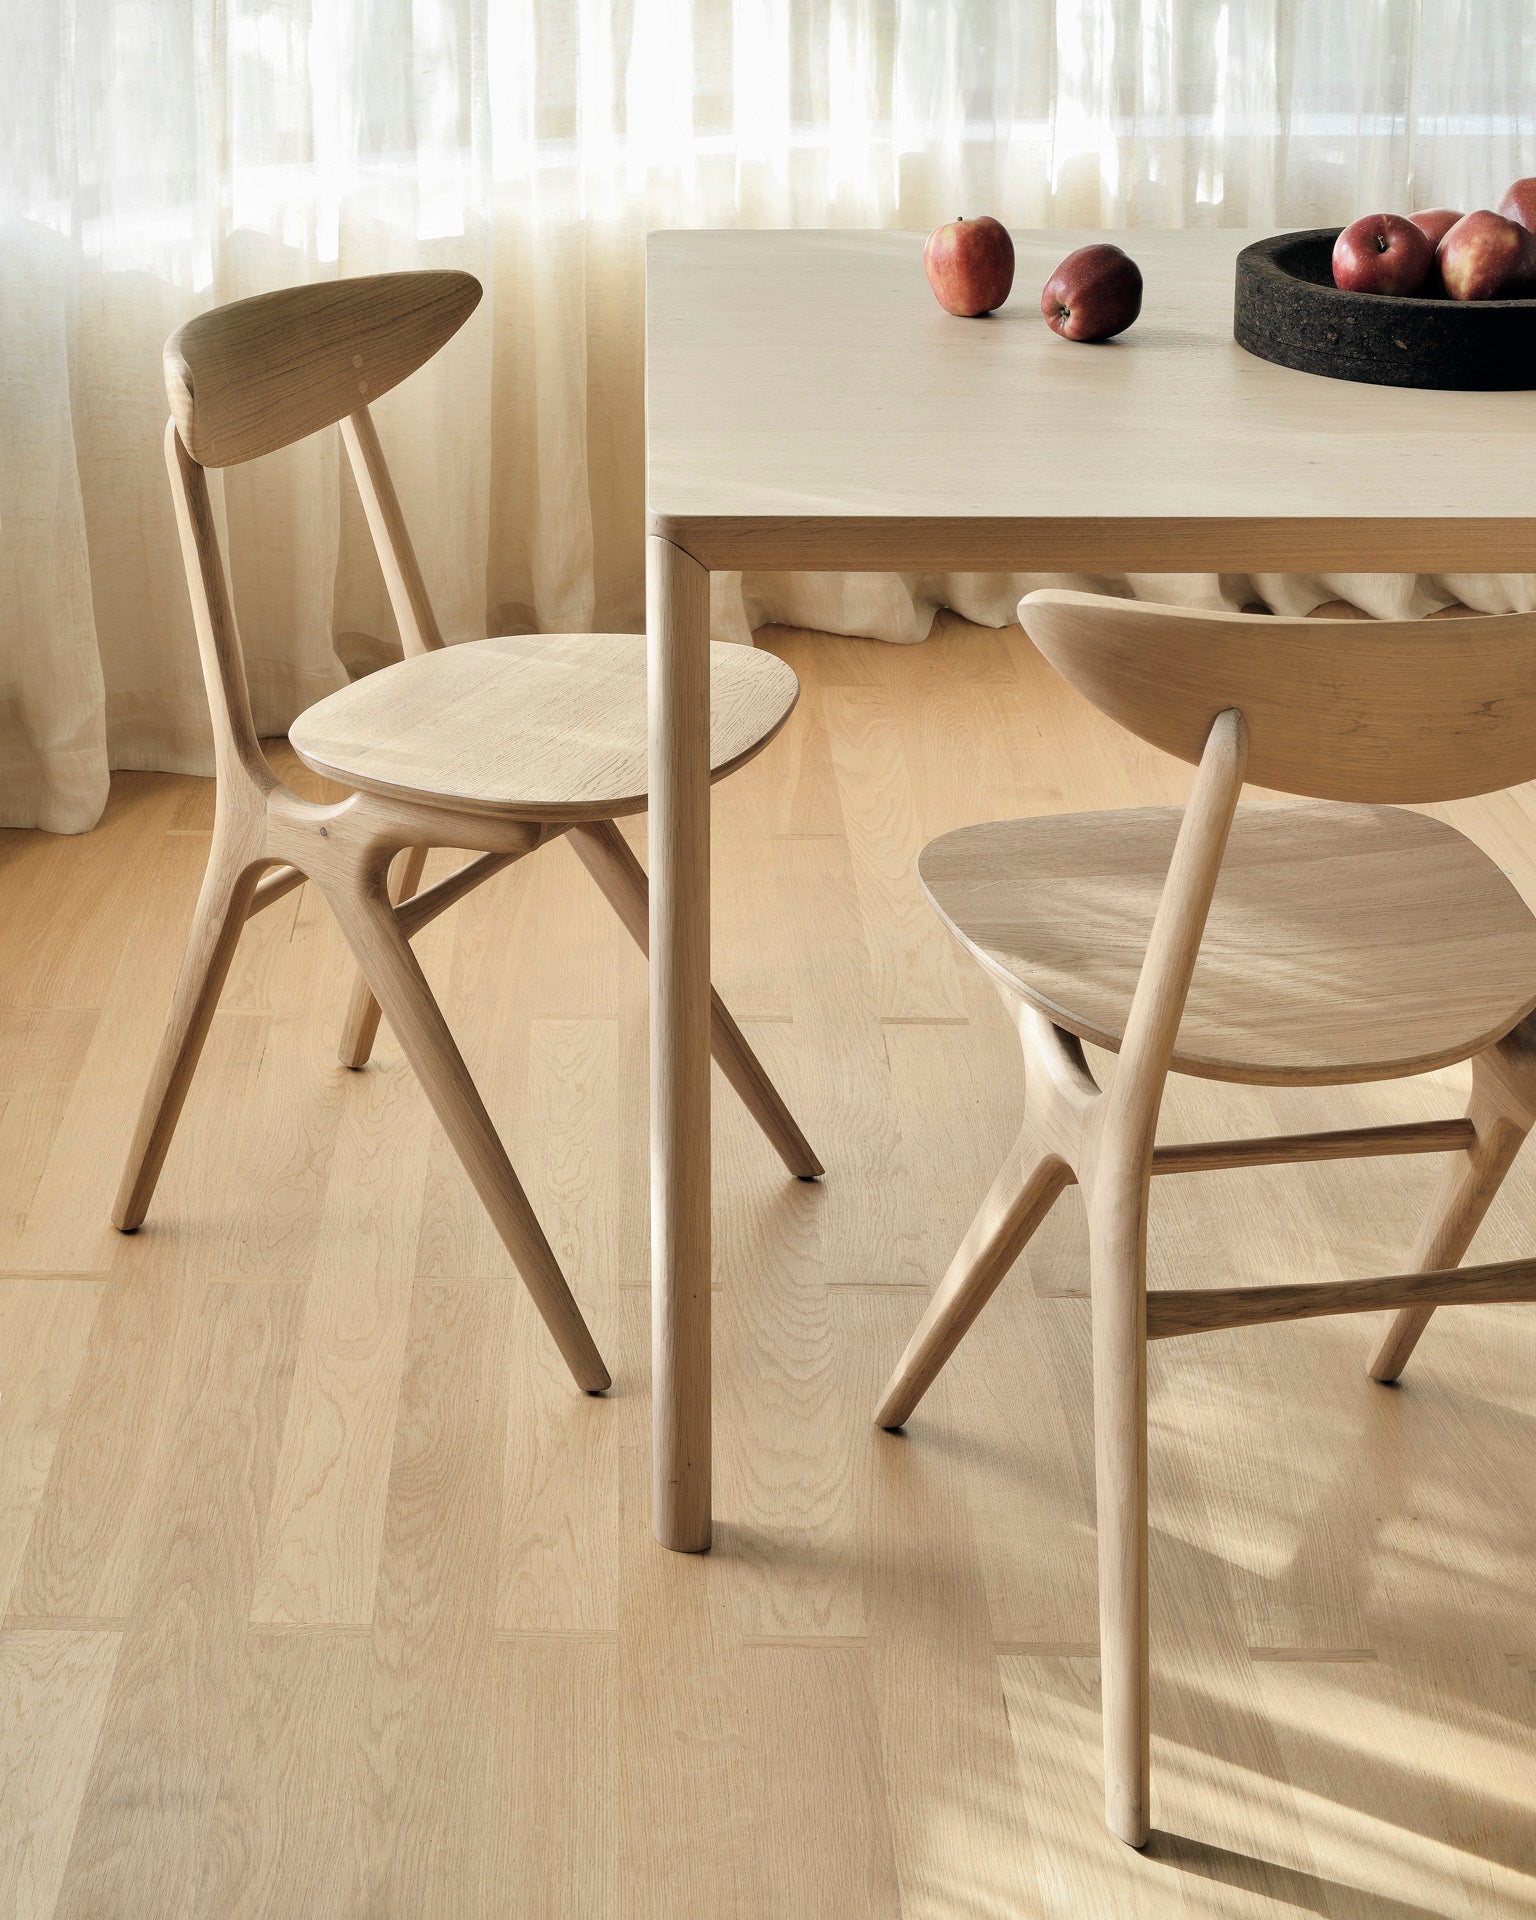 比利時原裝進口實木傢俬 - 餐桌系列 - Air系列橡木餐桌